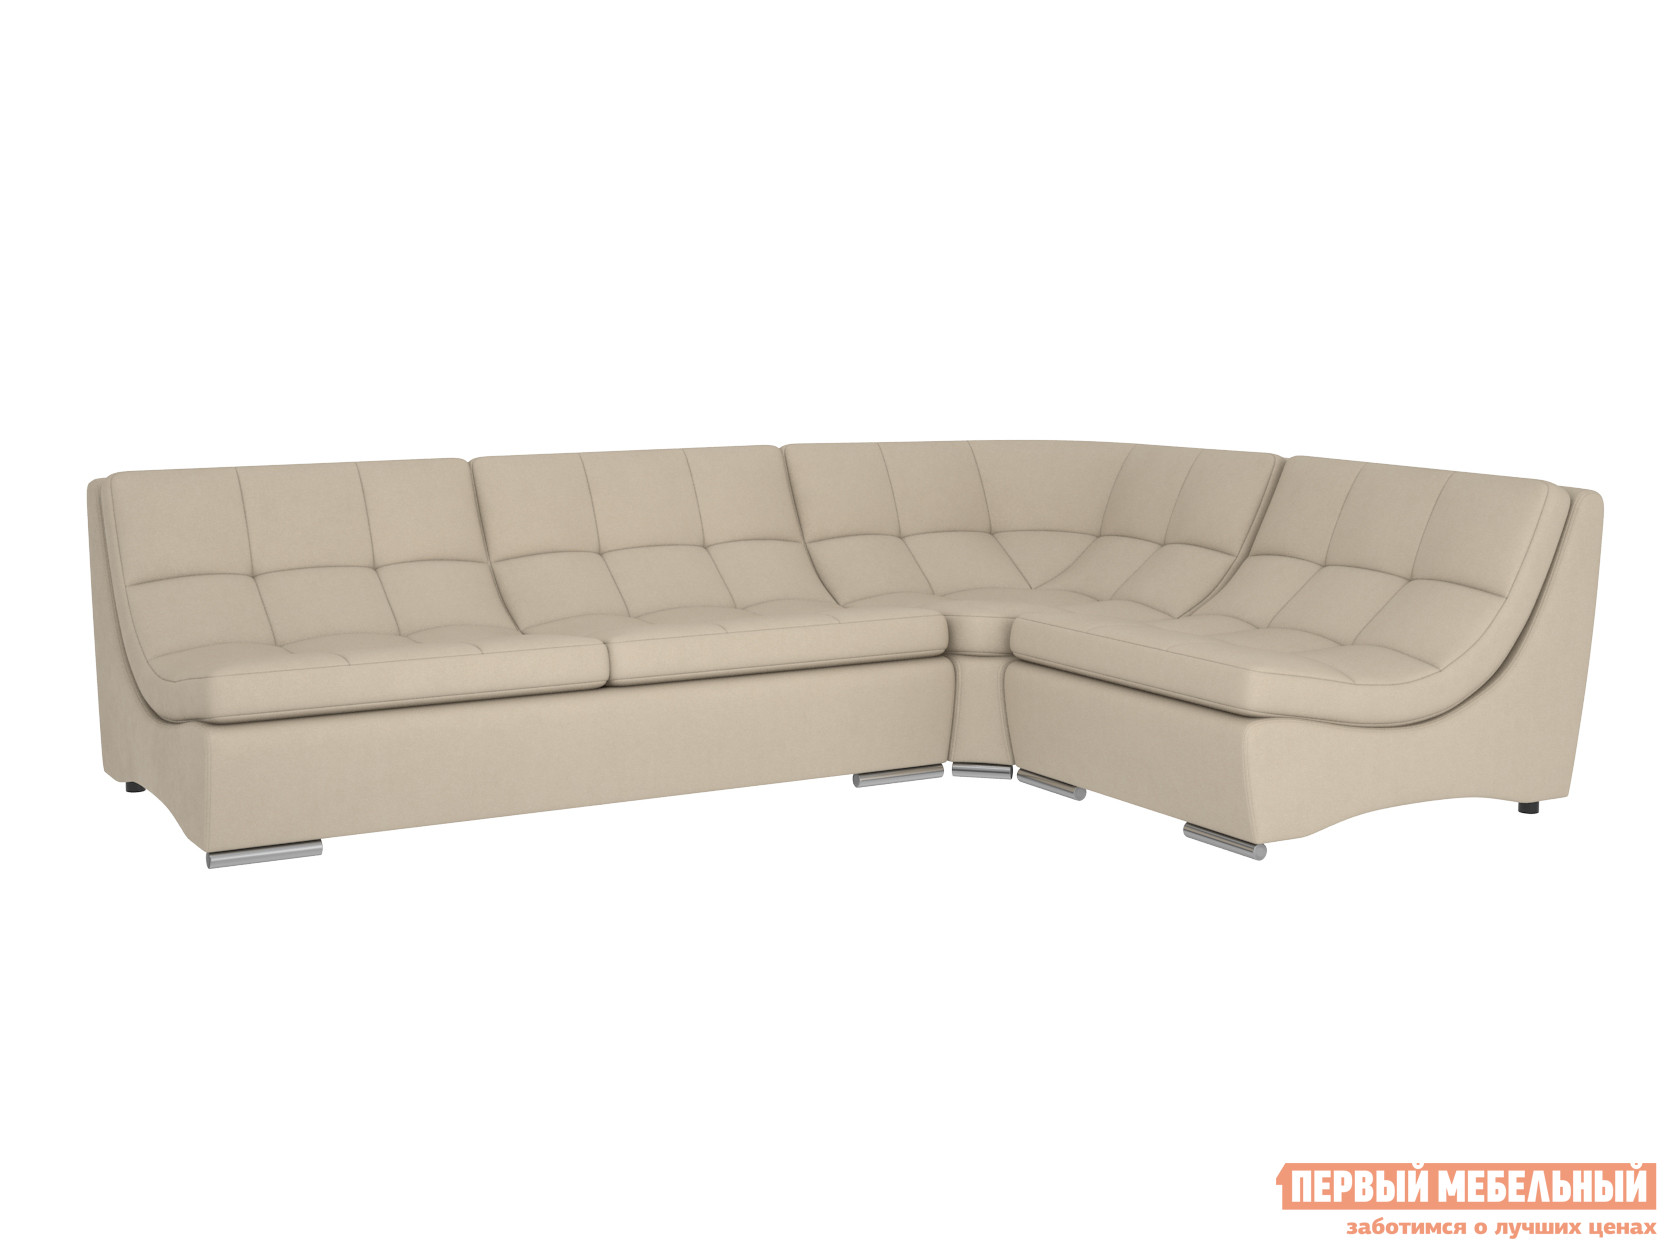 Угловой диван Первый Мебельный Модульная система Сан-Диего с механизмом, вариант 2